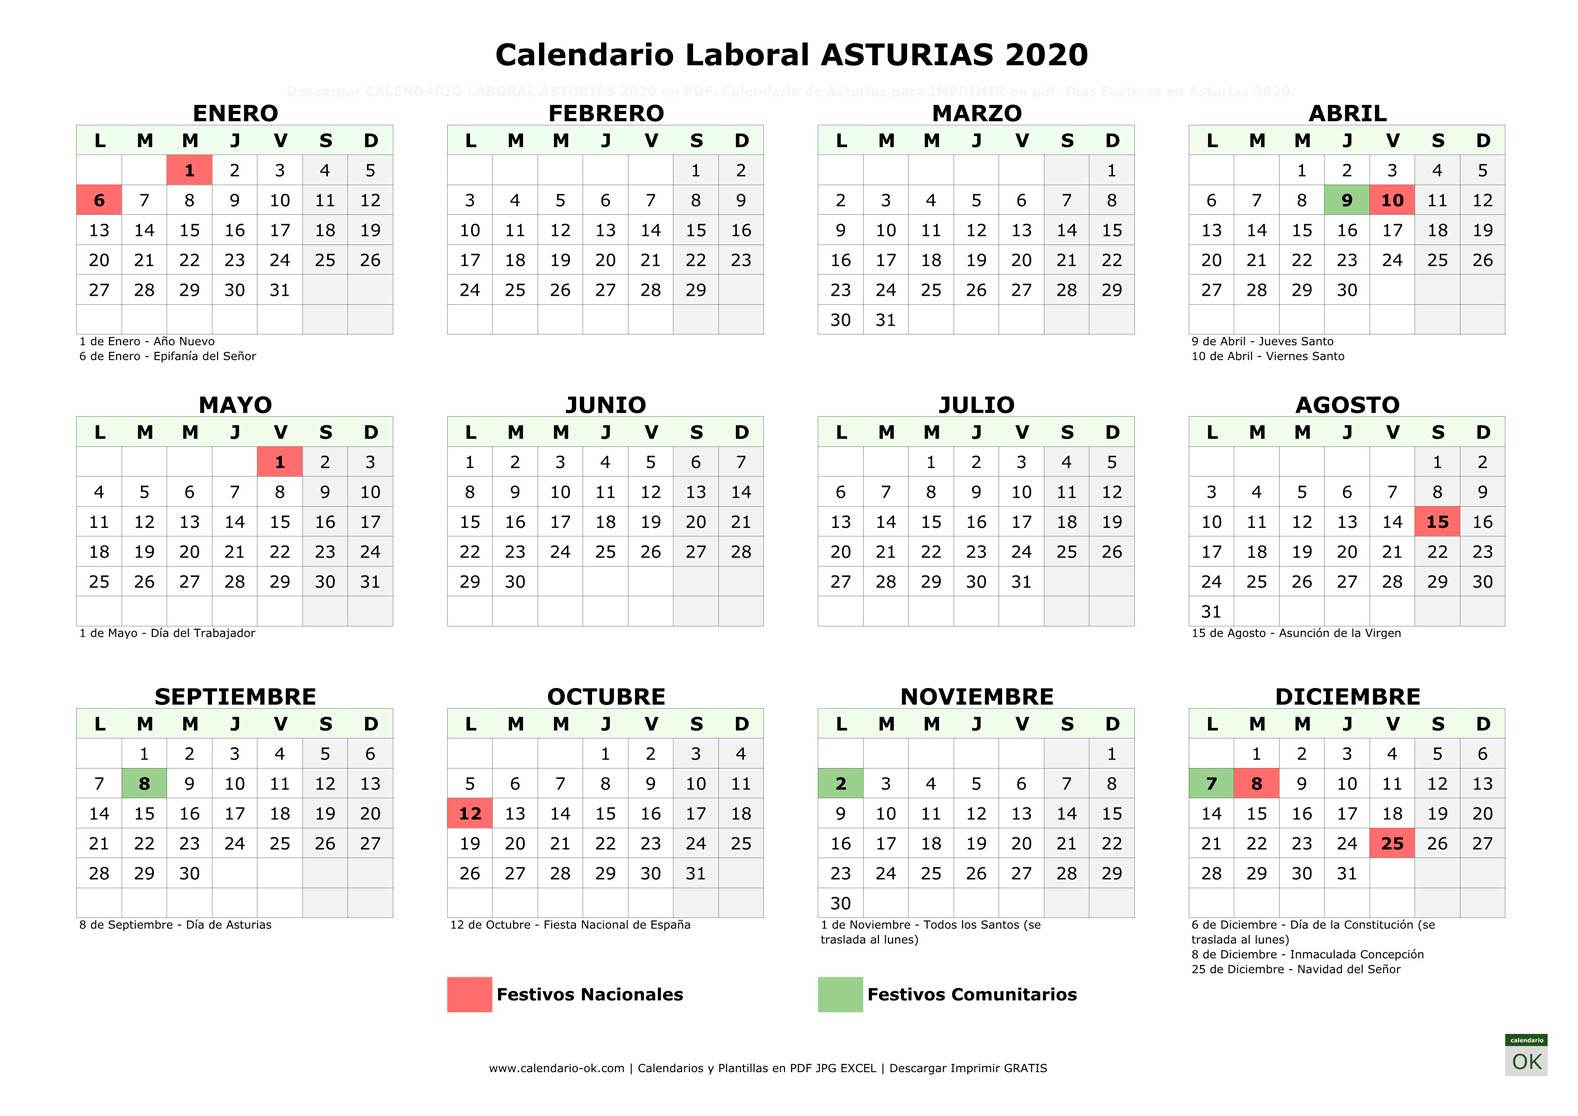 Calendario Laboral ASTURIAS 2020 horizontal